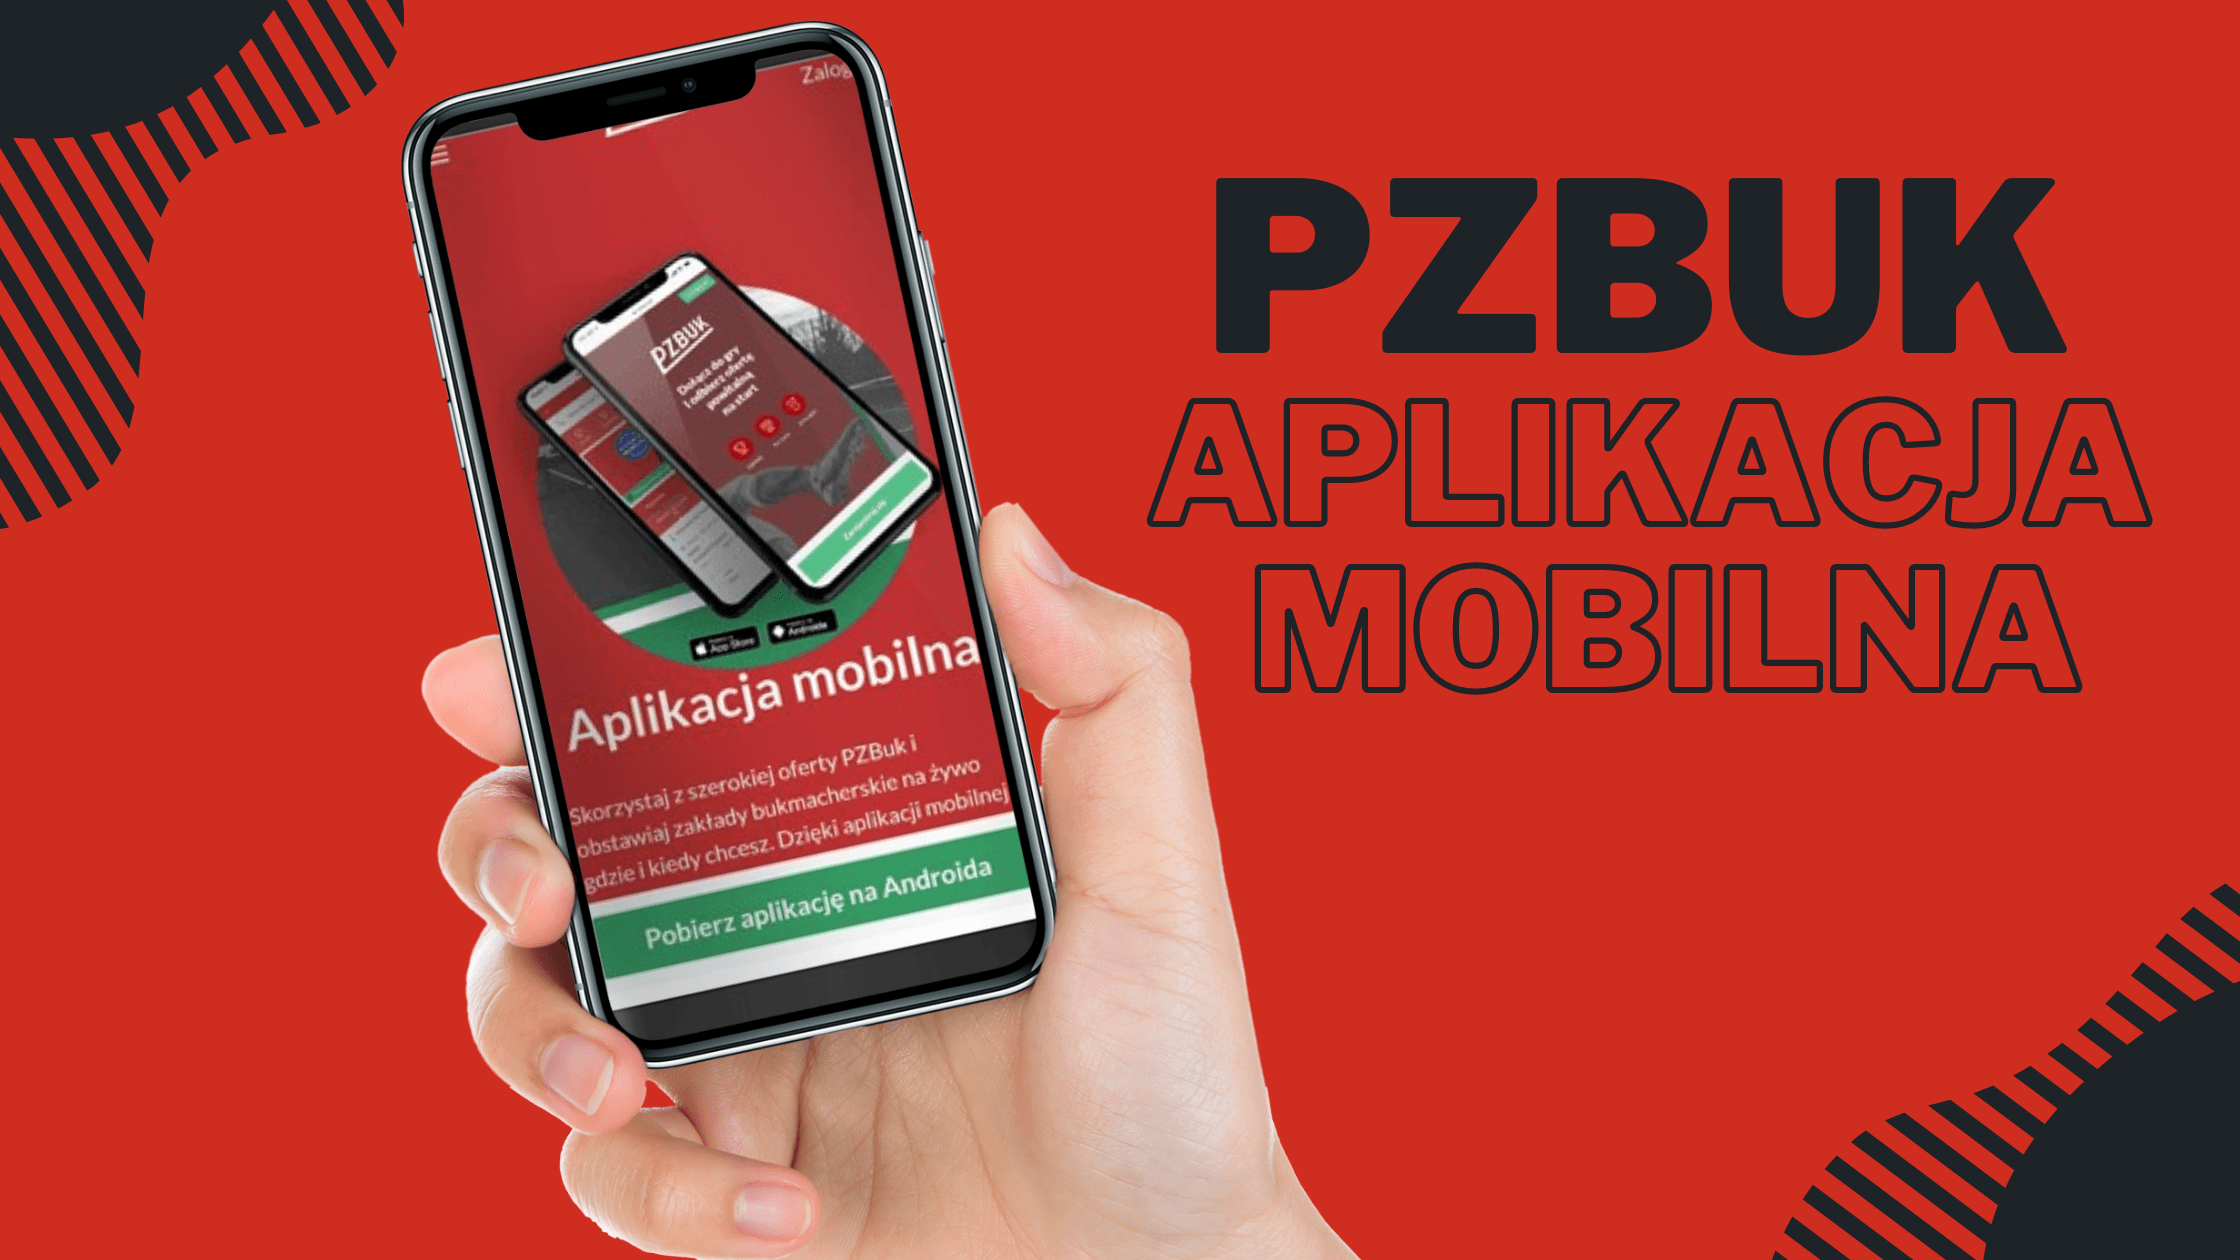 Aplikacja mobilna dla iOS i Android PZBuk